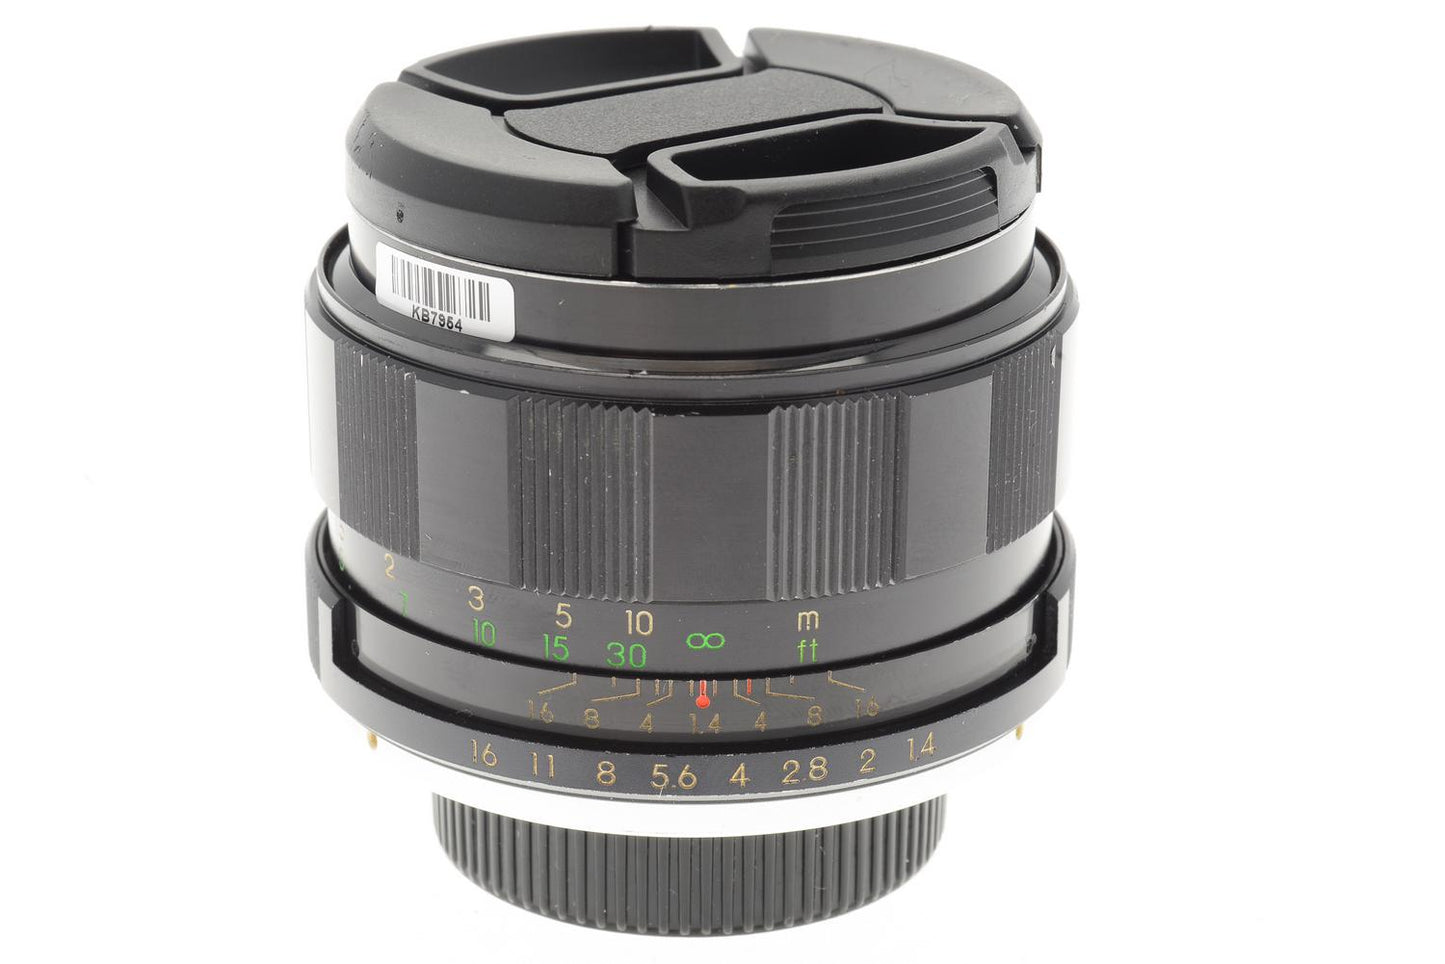 Cosina 55mm f1.4 Auto Cosinon - Lens